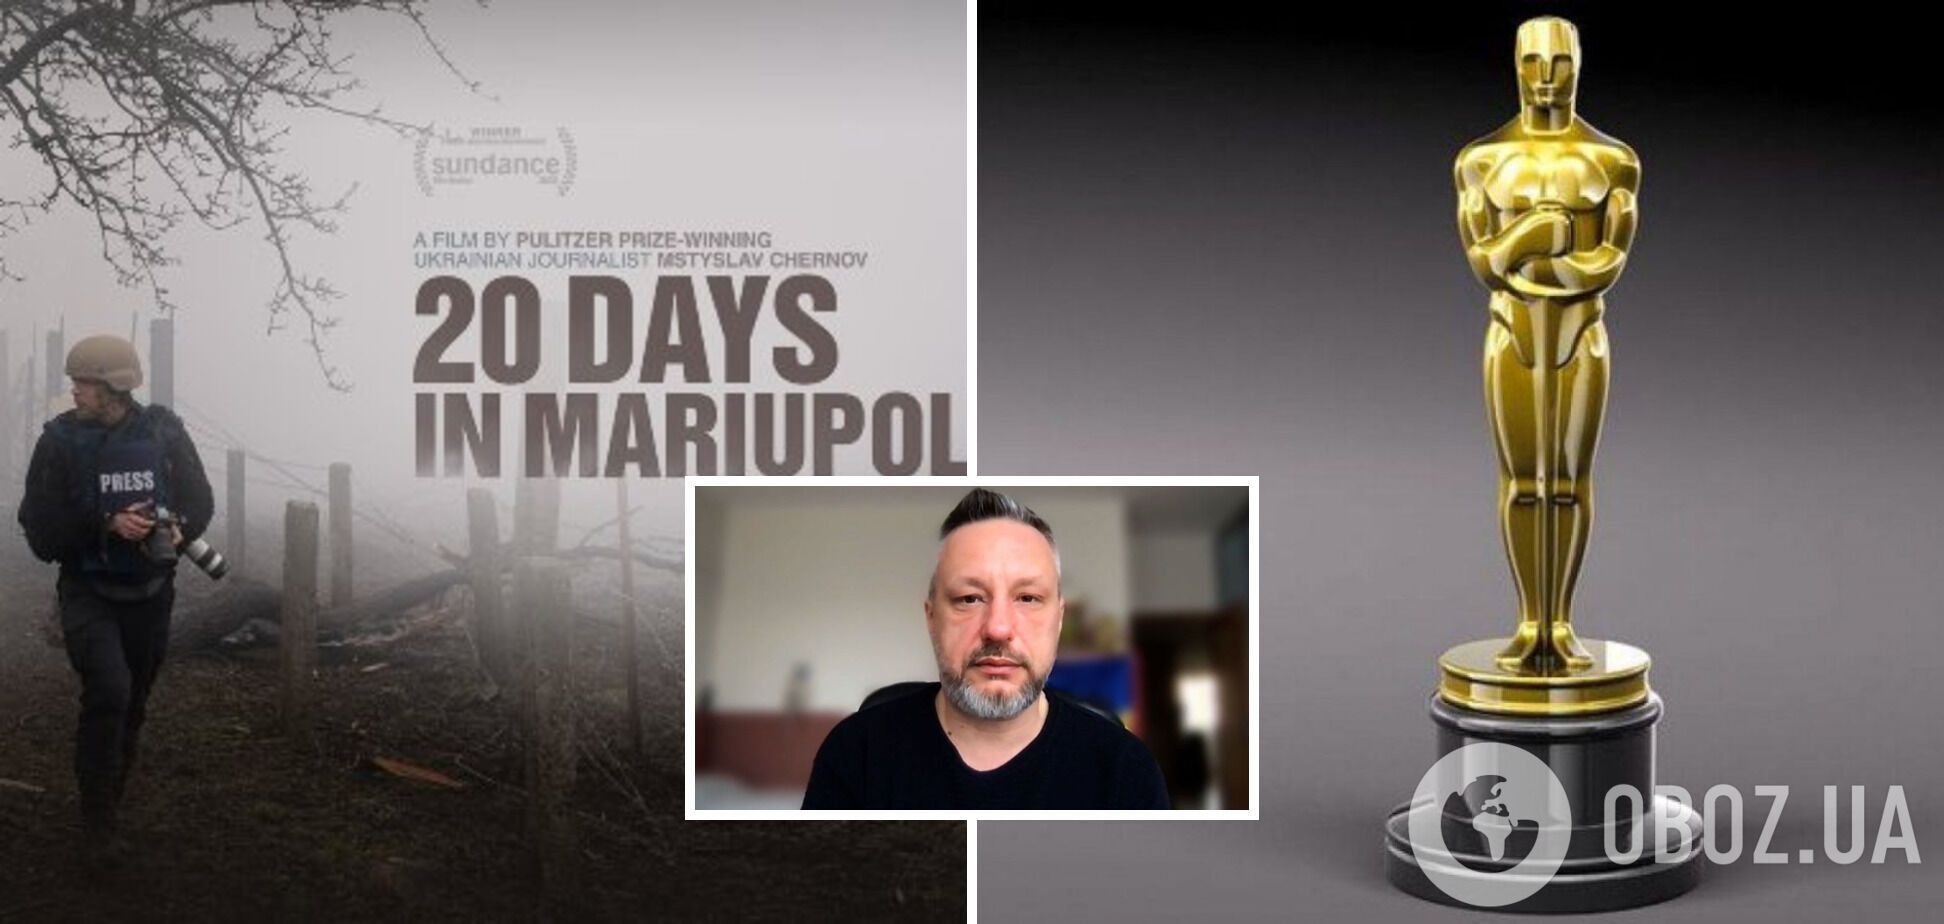 'Это победа правды': советник мэра Мариуполя отреагировал на Оскар для фильма '20 дней в Мариуполе'